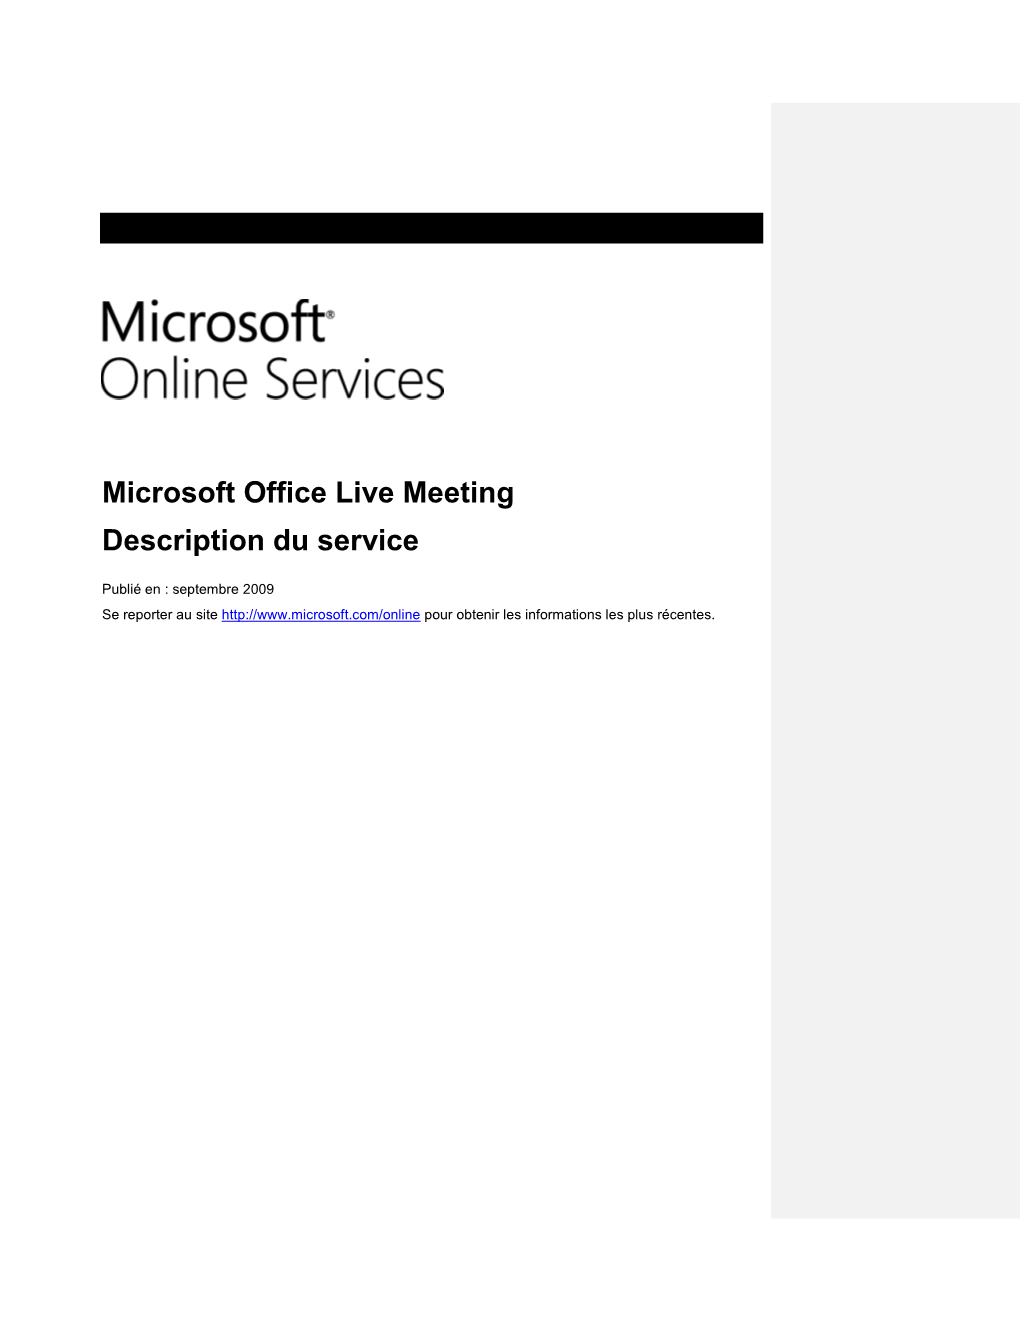 Microsoft Office Live Meeting Description Du Service